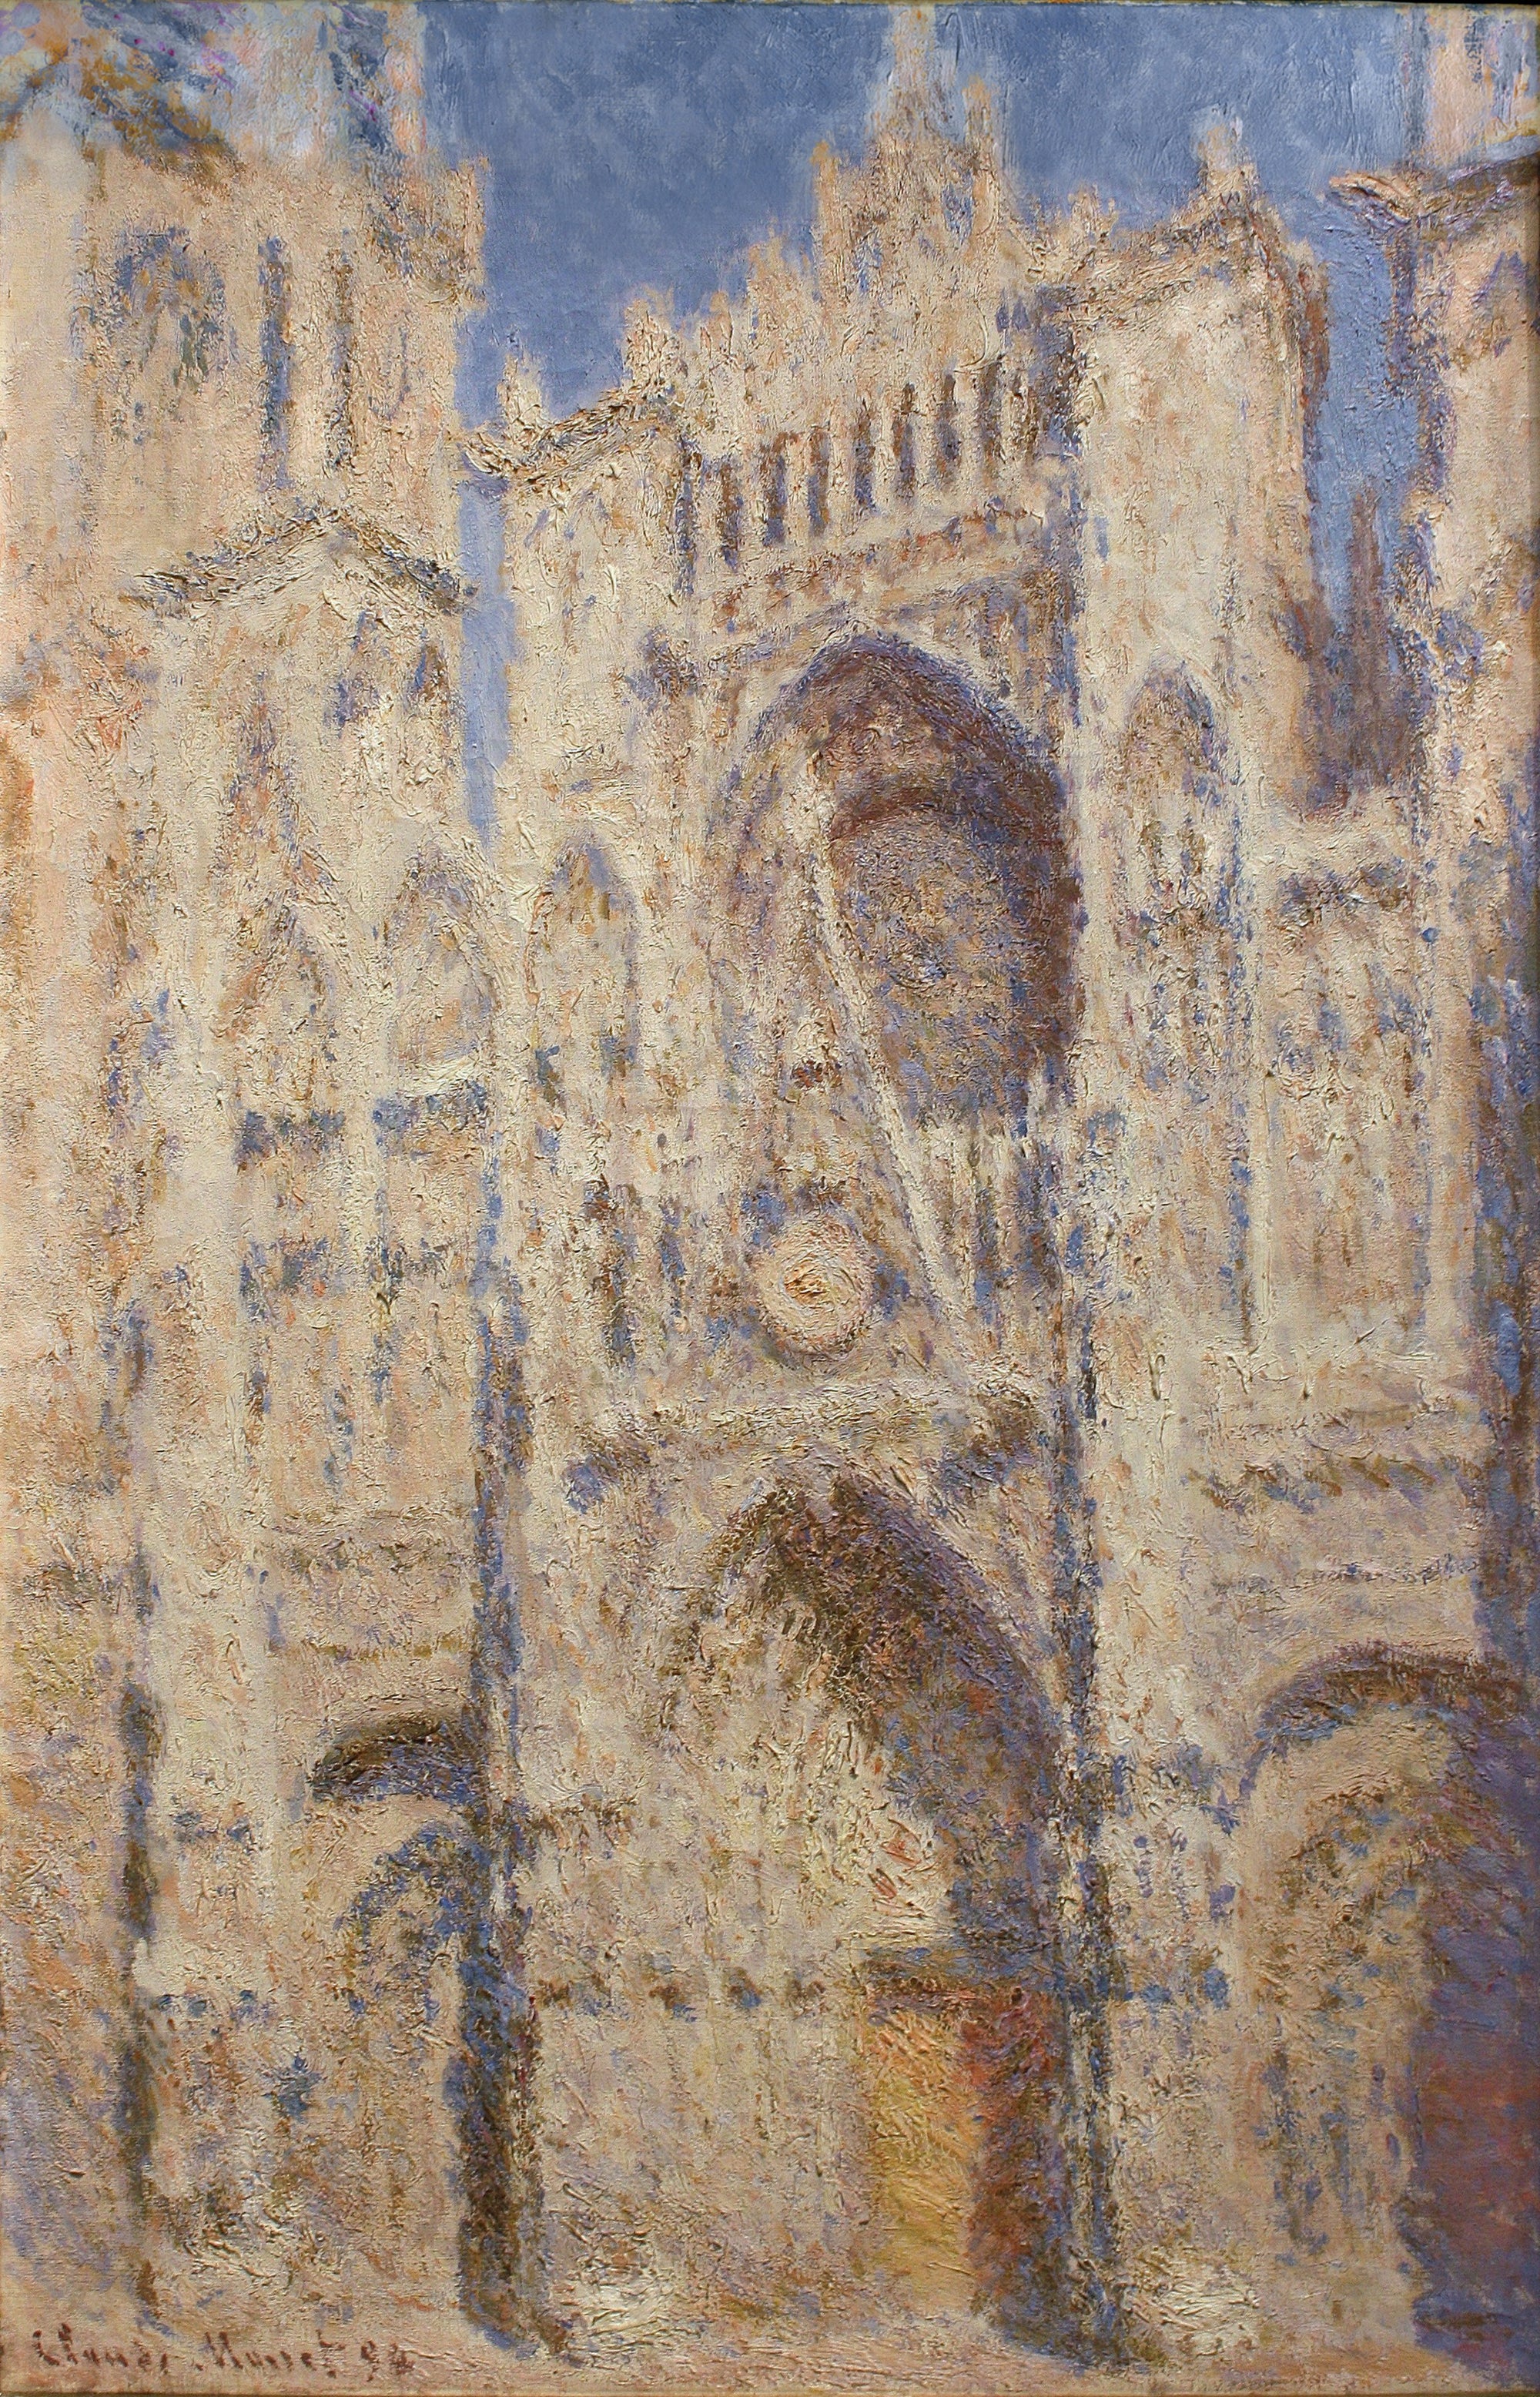 Le Portail de la cathédrale de Rouen au soleil (W1325) - Claude Monet